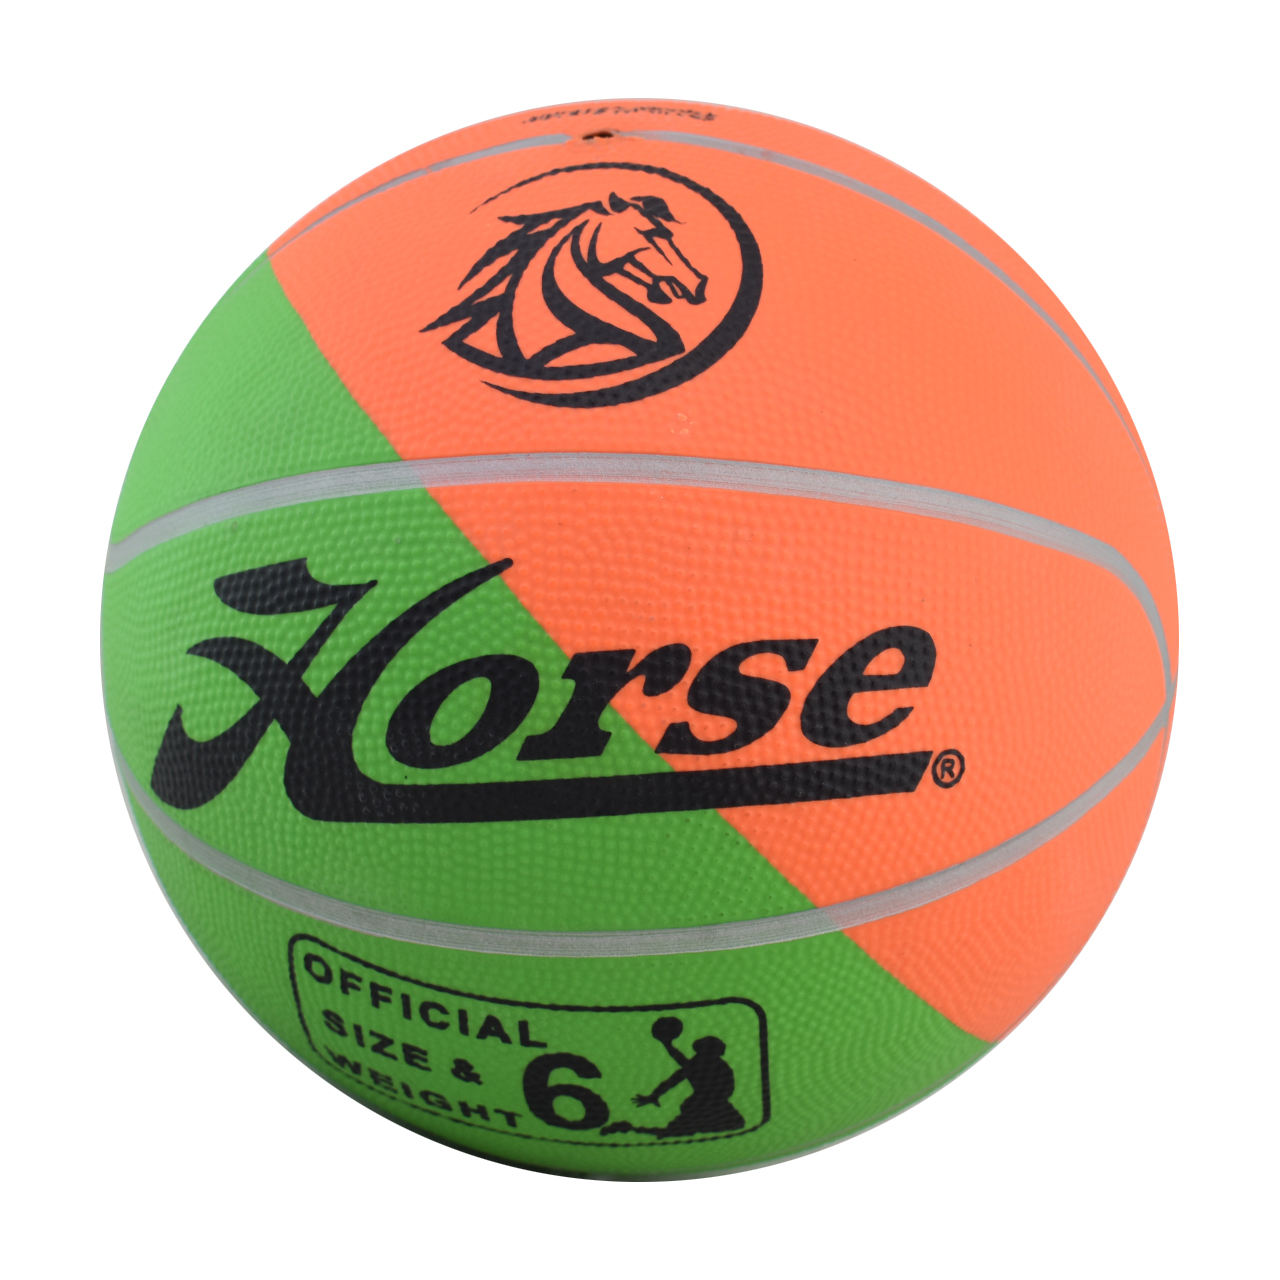 توپ بسکتبال هورس-Horse توپ بسکتبال مدل 1004 سایز 6